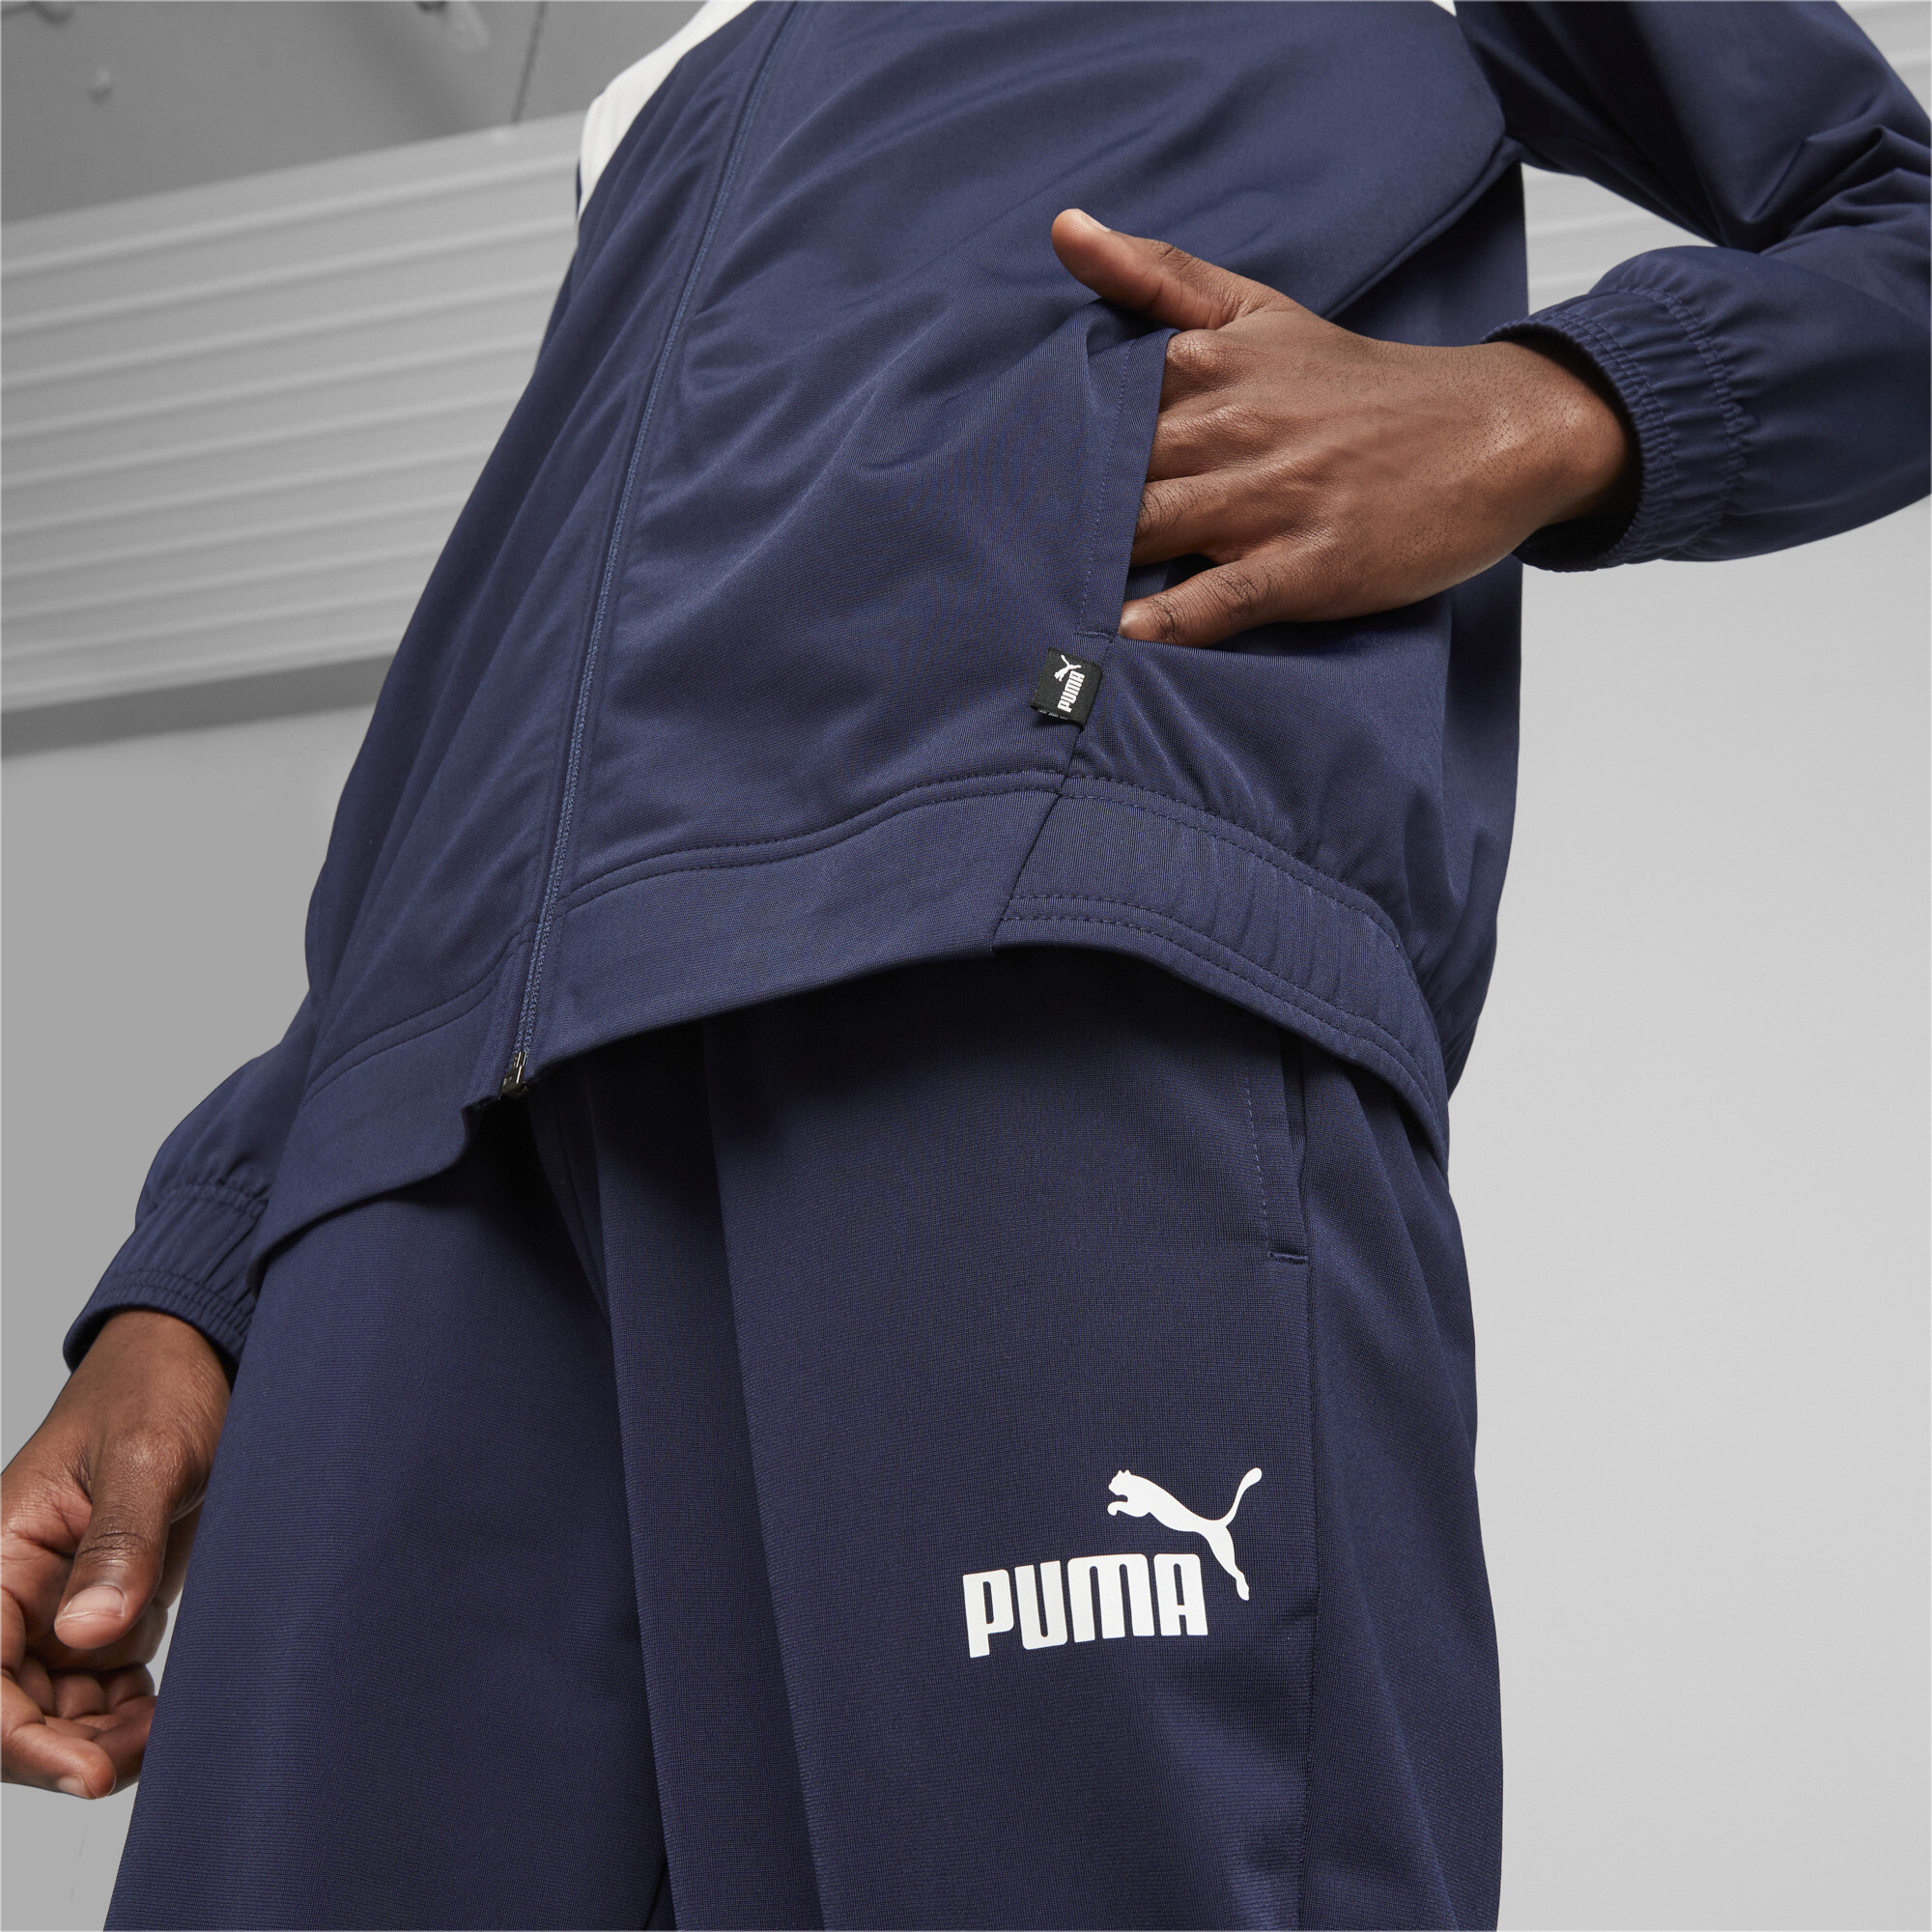 Men's Puma Men's Poly Tracksuit, Blue, Size L, Clothing